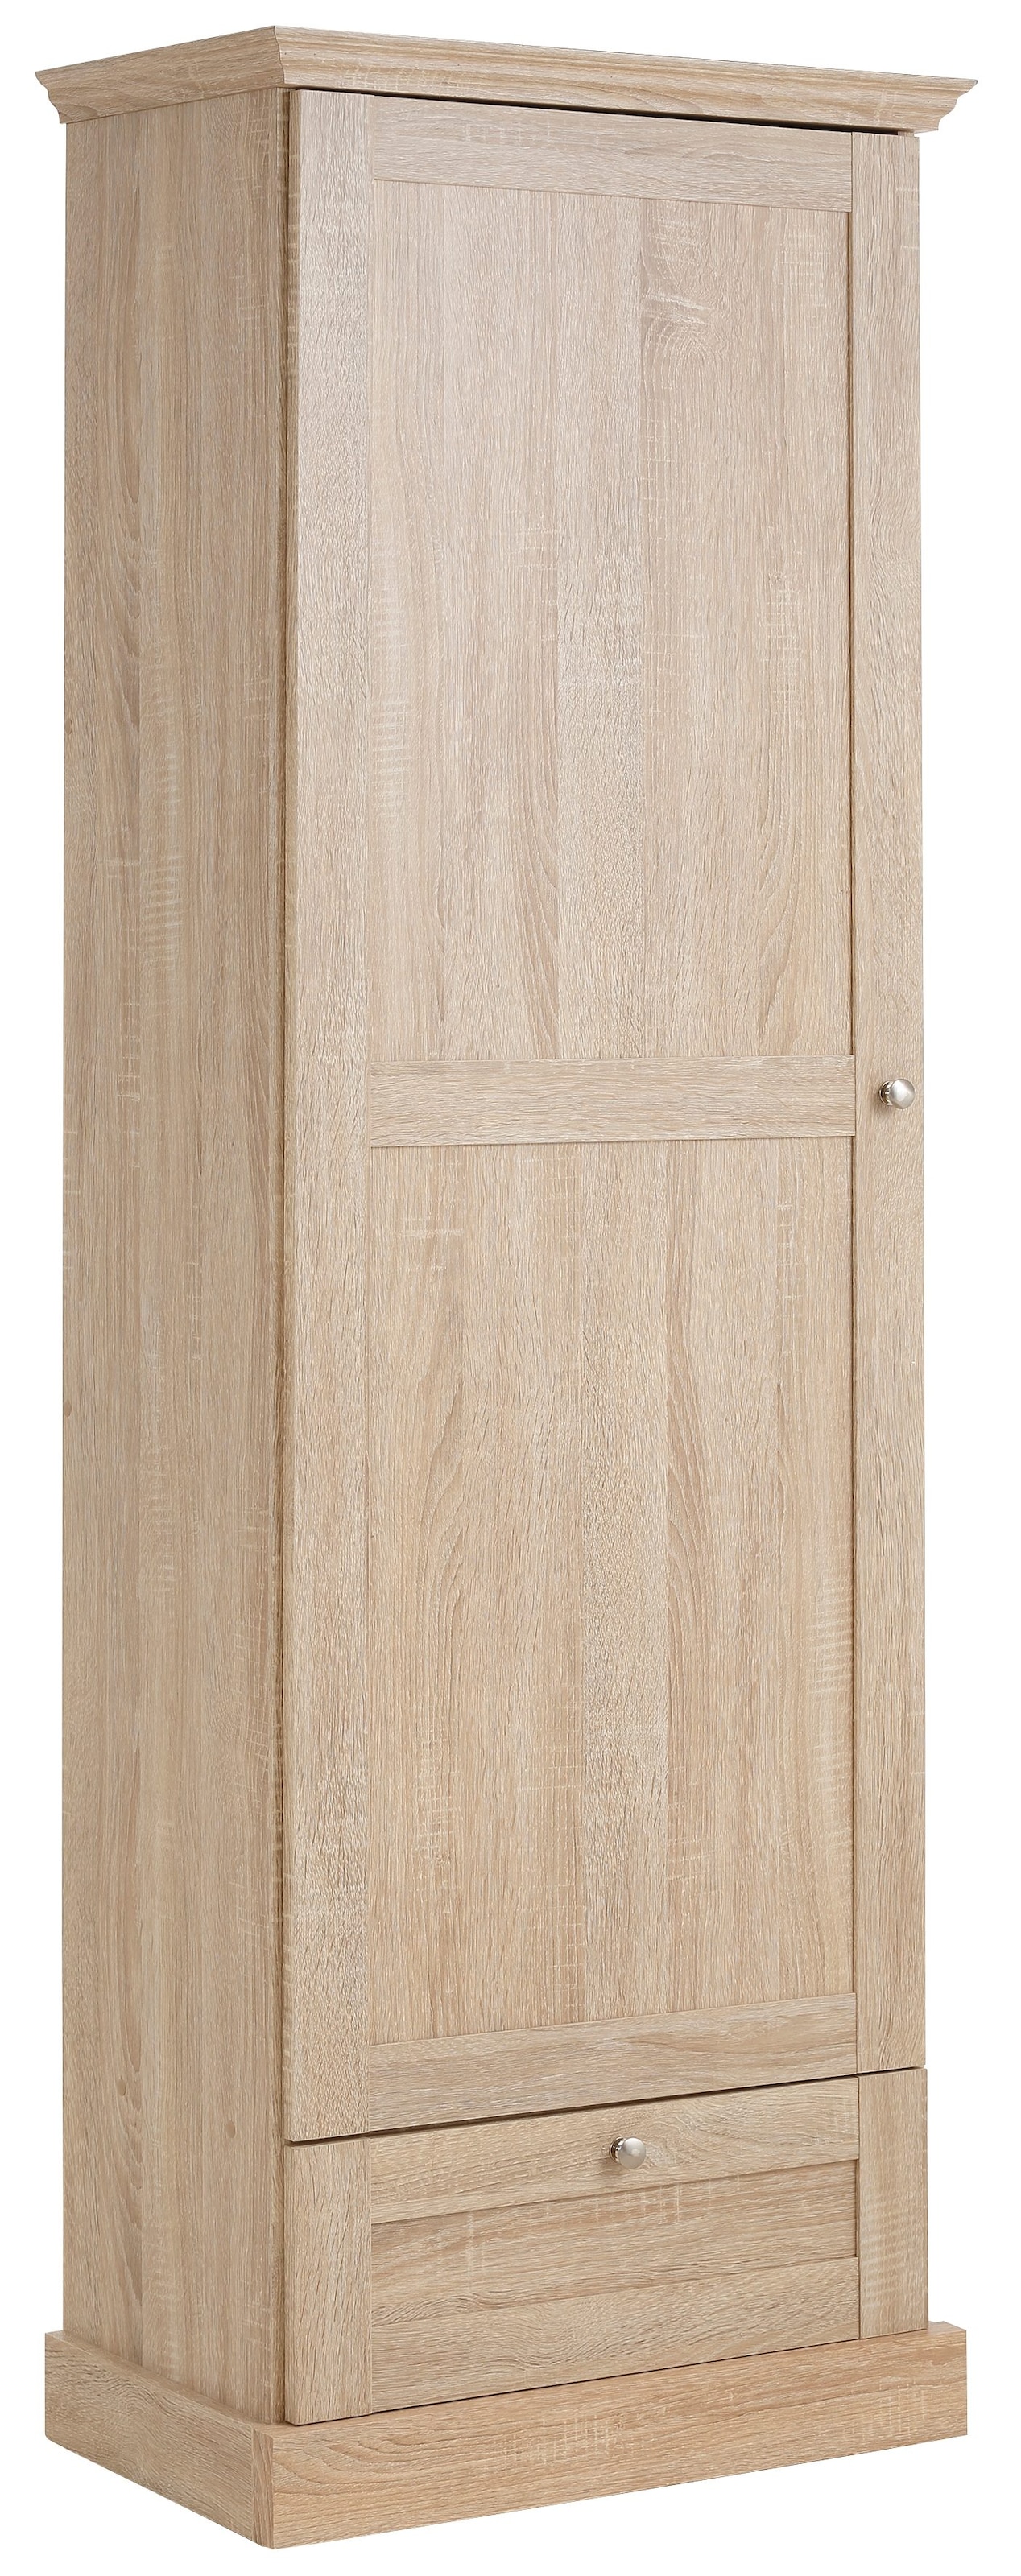 Home affaire Garderobenschrank »Binz«, mit einer schönen Holzoptik, mit vielen  Stauraummöglichkeiten, Höhe 180 cm auf Rechnung kaufen